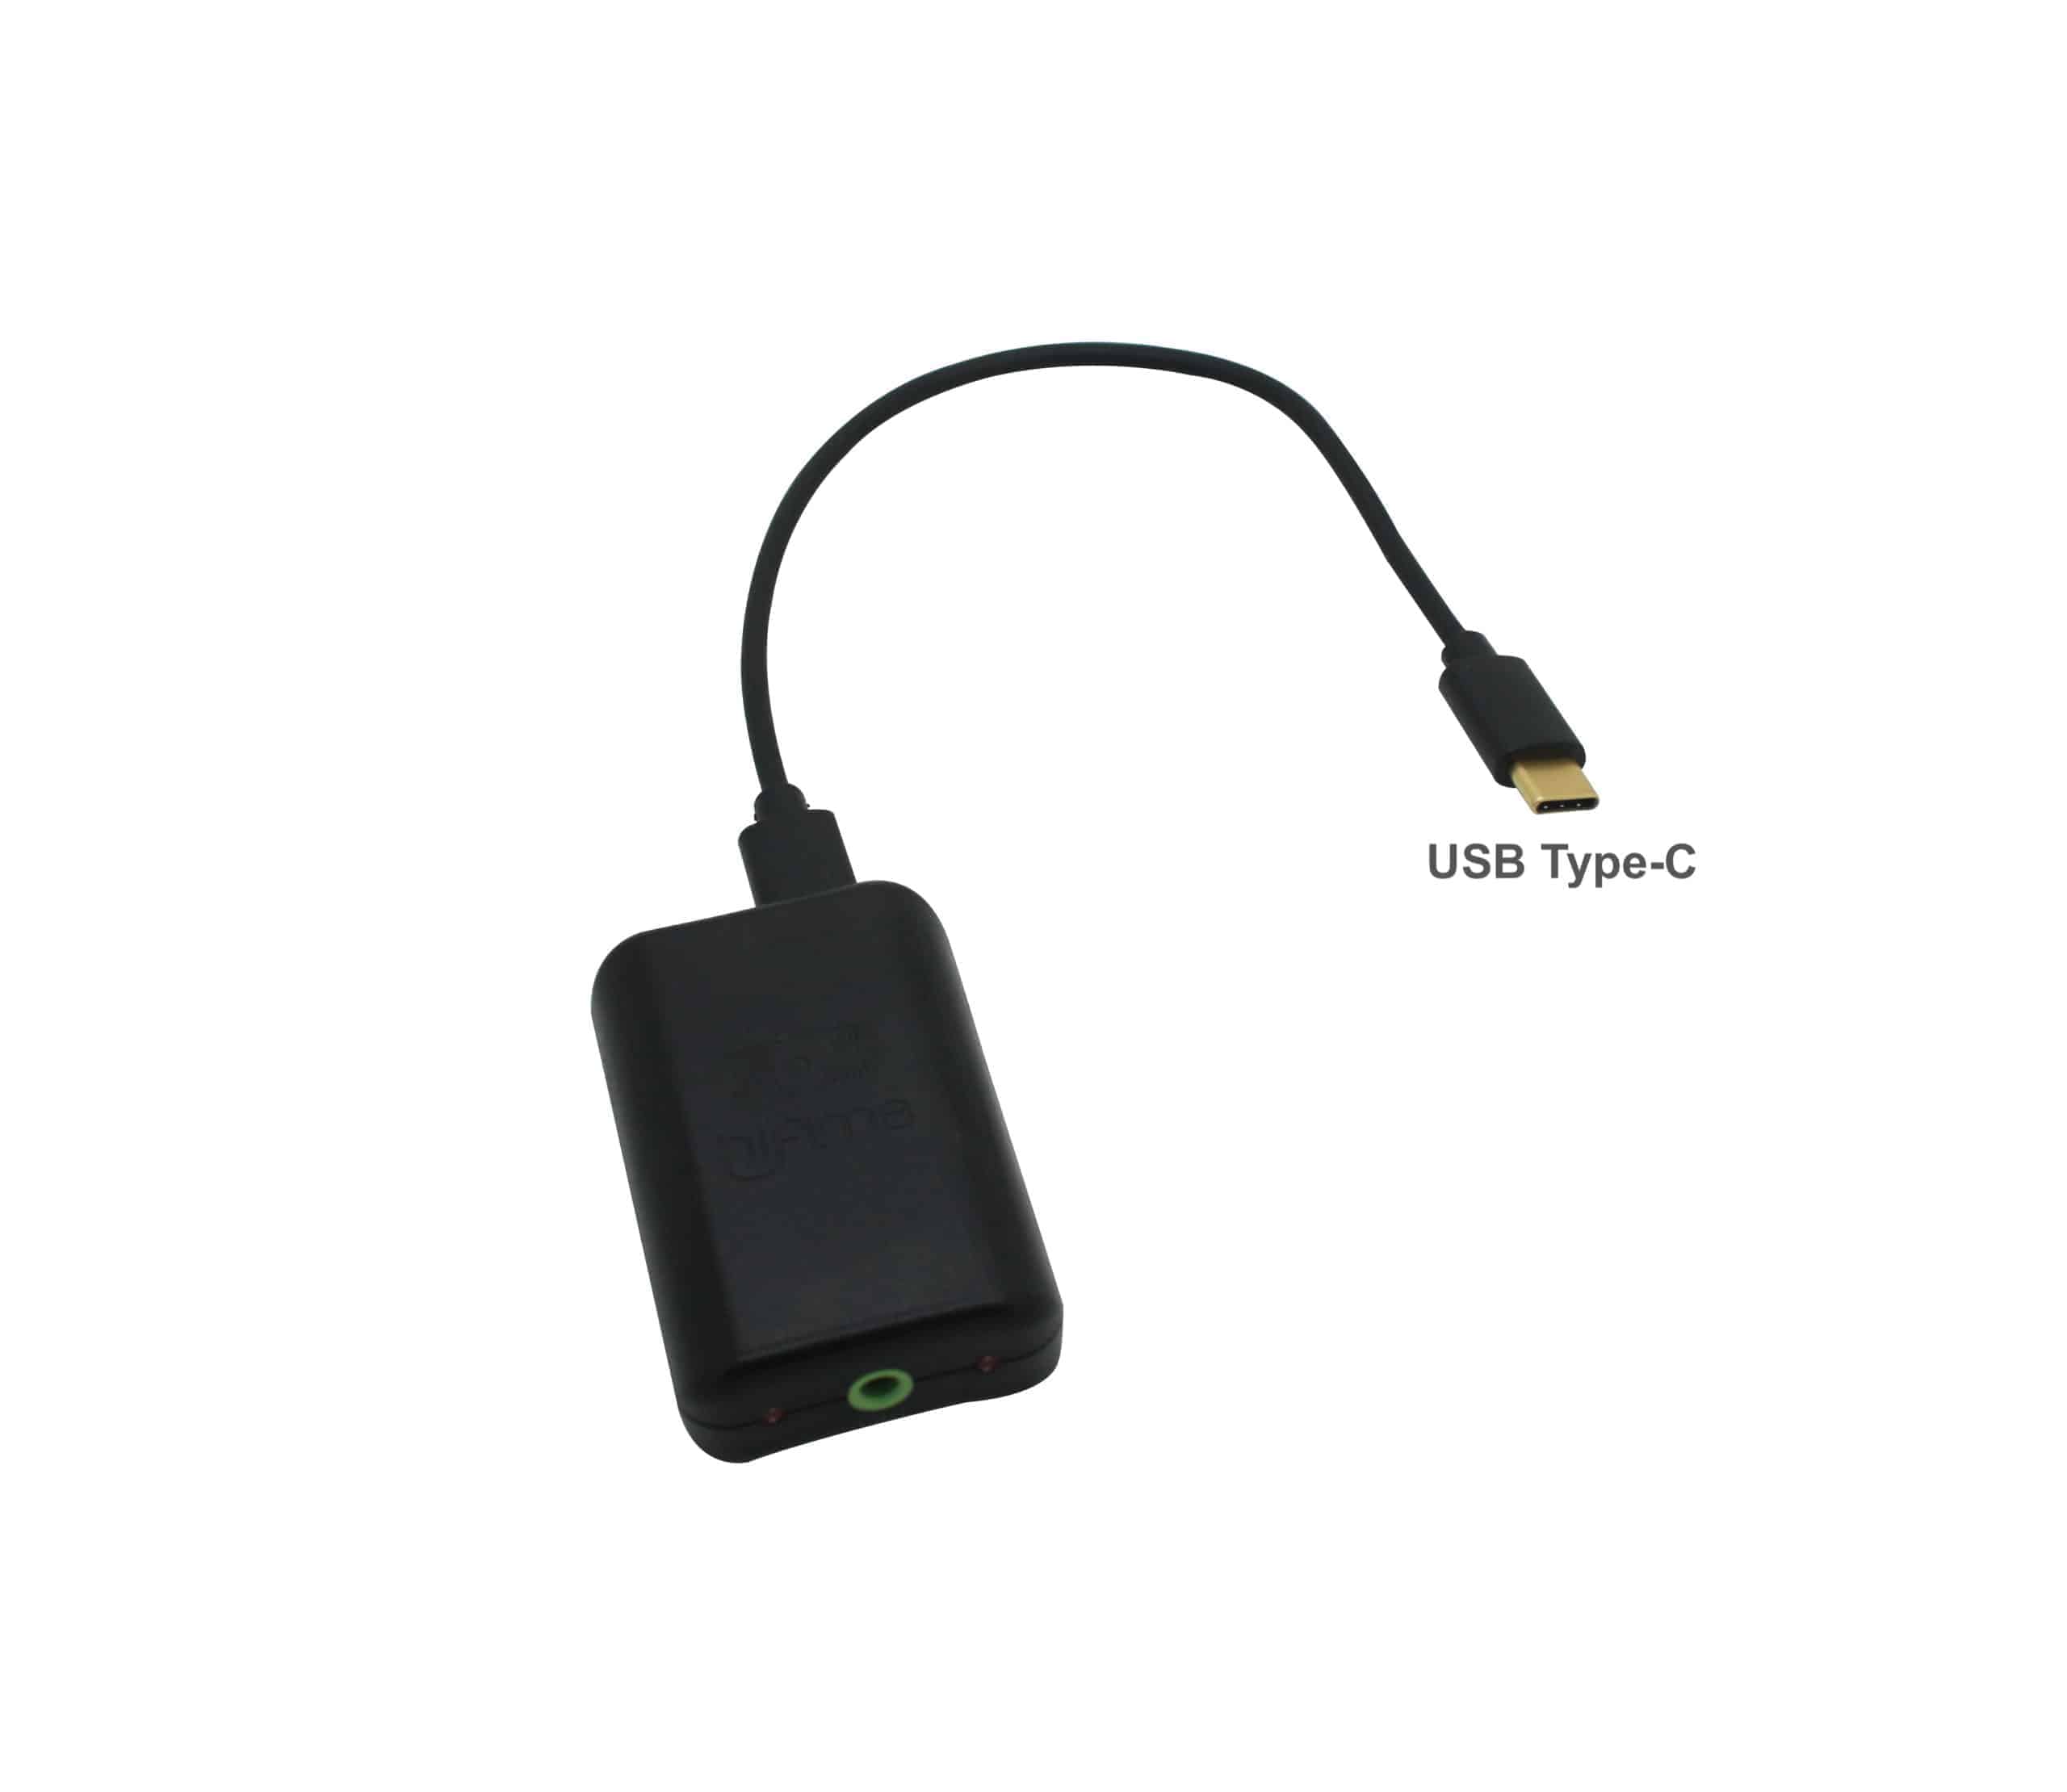 Hifime S2 USB and SPDIF DAC (Sabre ES9038q2m)